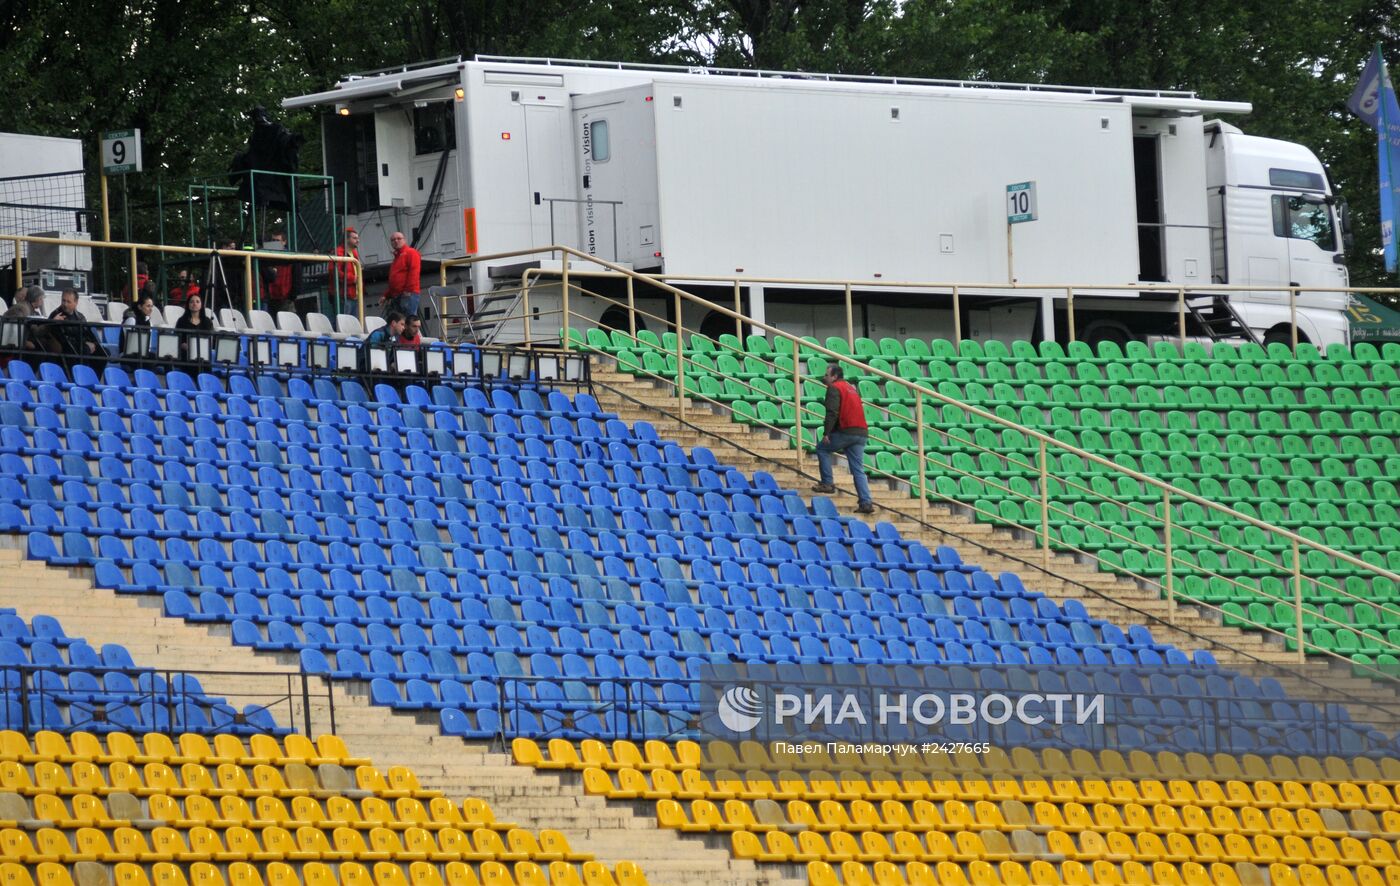 Матчи 29-го тура чемпионата Украины по футболу прошли без зрителей